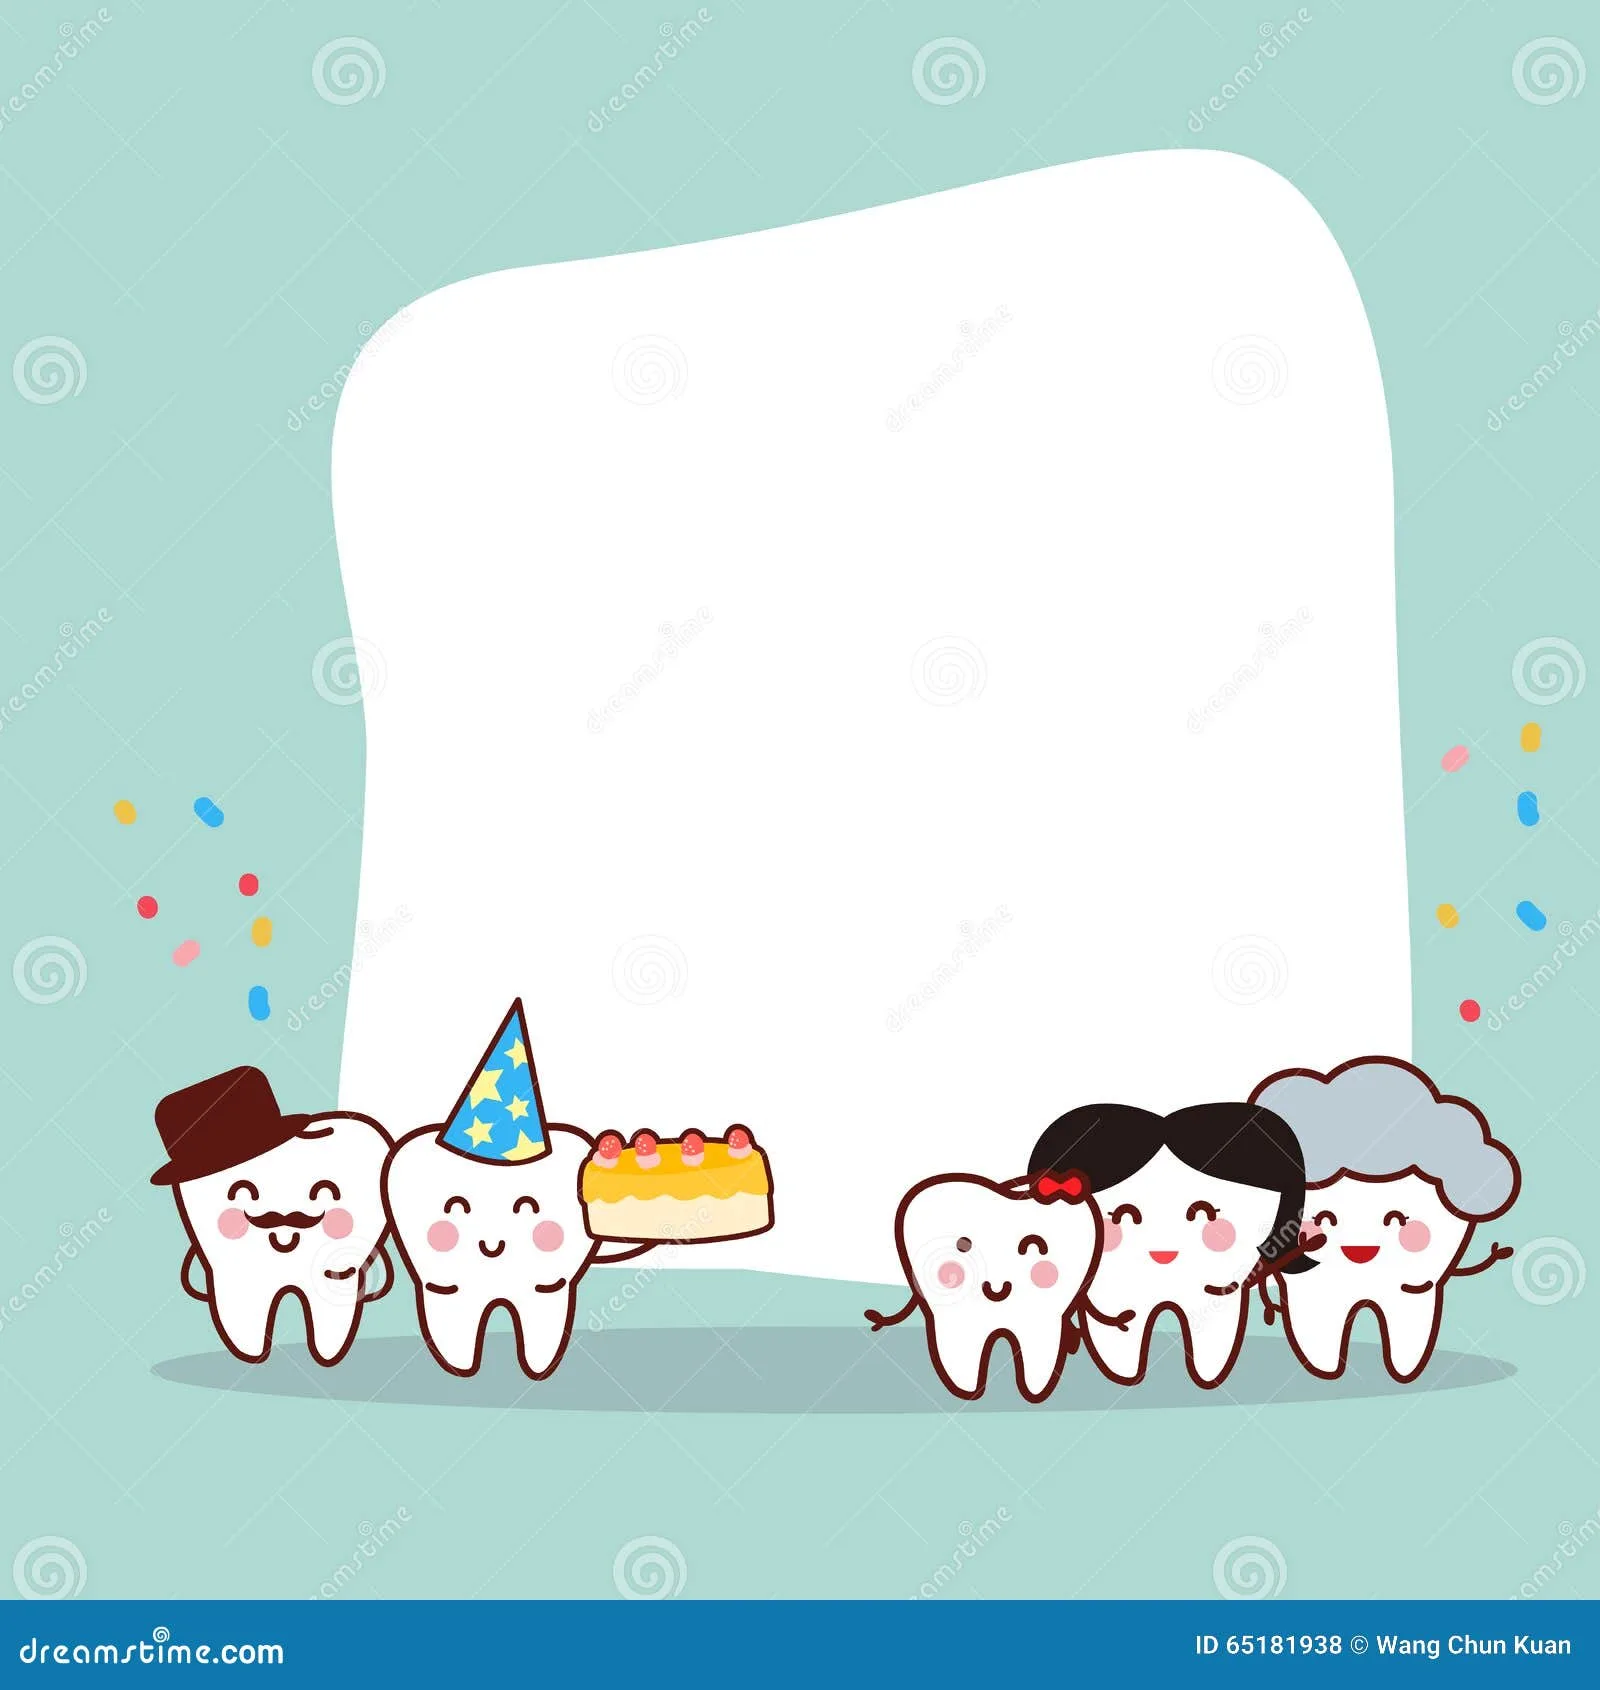 Фото Поздравление с днем рождения стоматологу мужчине #56